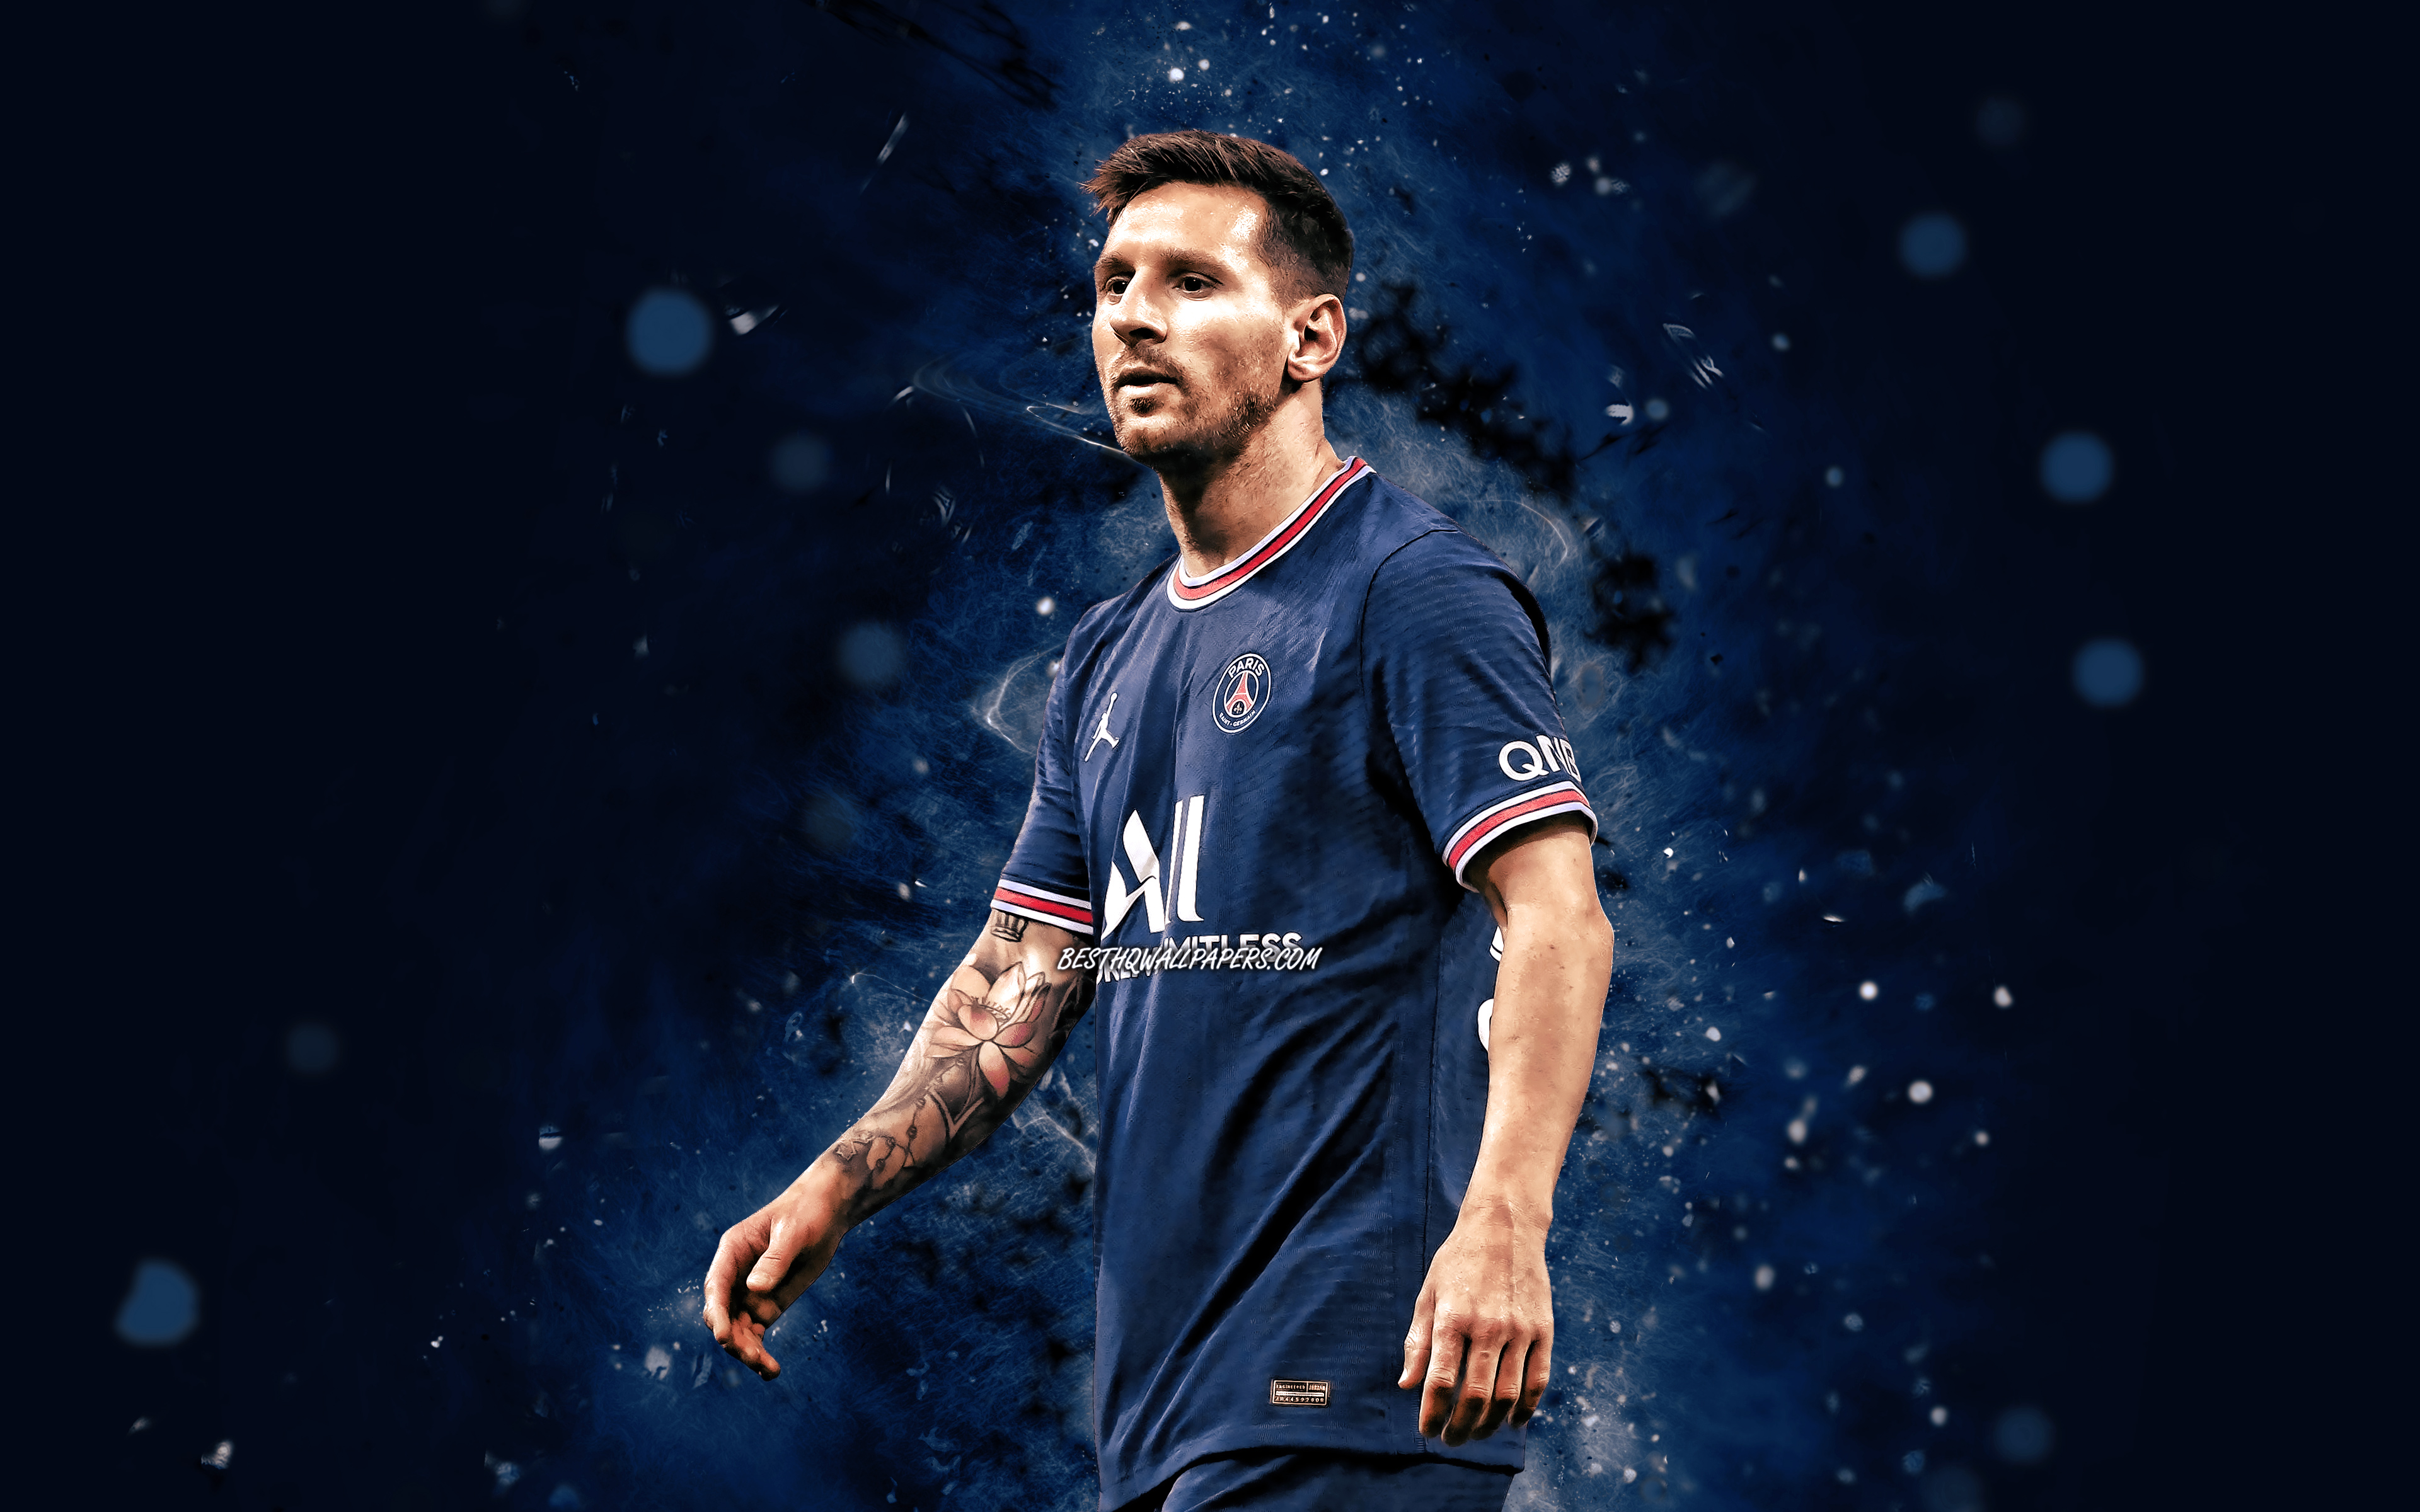 Nếu bạn là một fan hâm mộ chân chính của Messi, bạn sẽ không thể bỏ qua bức ảnh đẹp nhất và khiến con tim bạn đập lên vì ngưỡng mộ. Với sắc nét tuyệt đối, hình ảnh Messi này sẽ cho bạn trải nghiệm một đẳng cấp vô cùng xa hoa và lịch lãm.